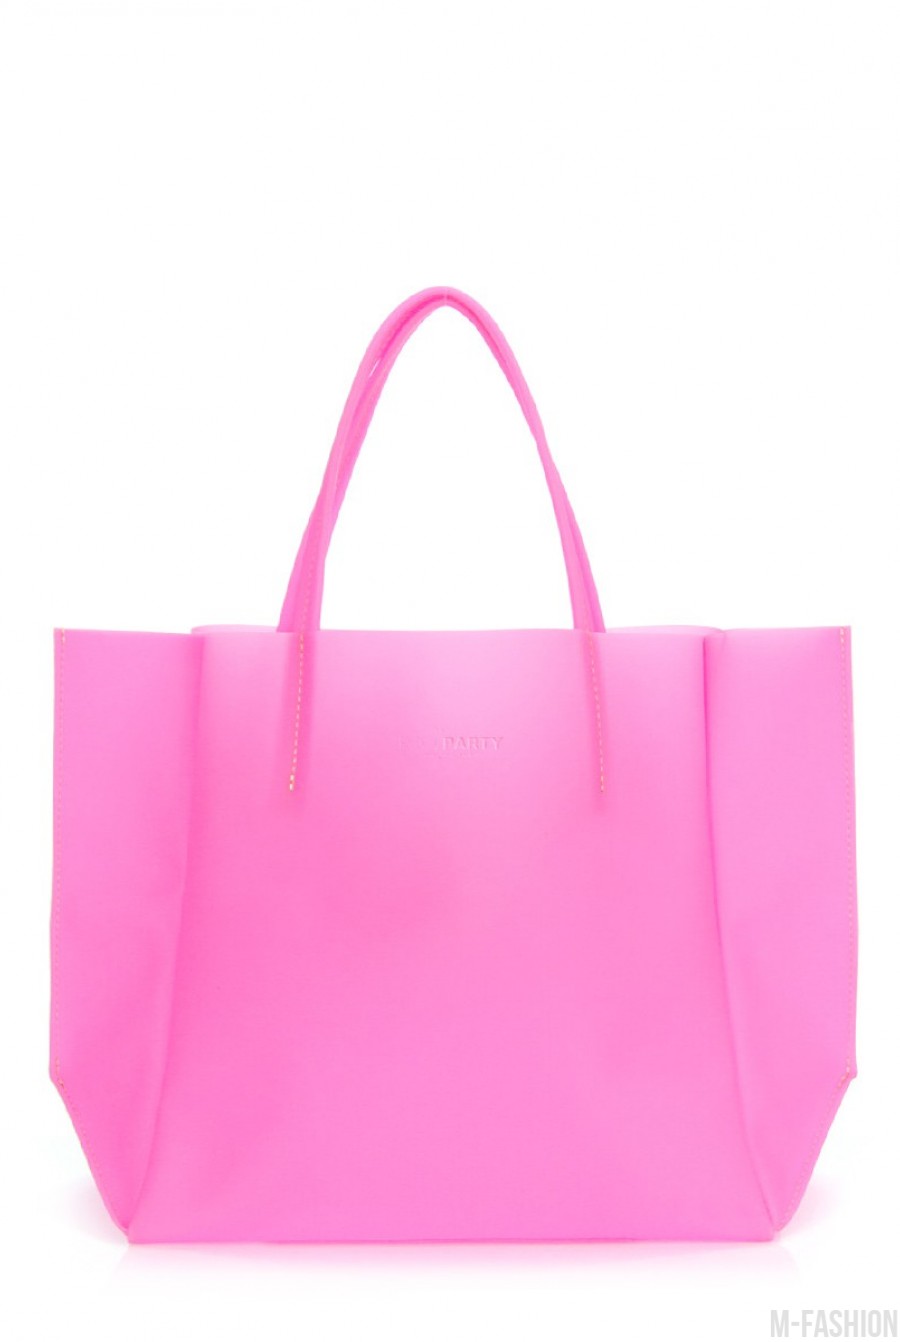 Пластиковая сумка-шоппинг Gossip малиновая - Фото 1